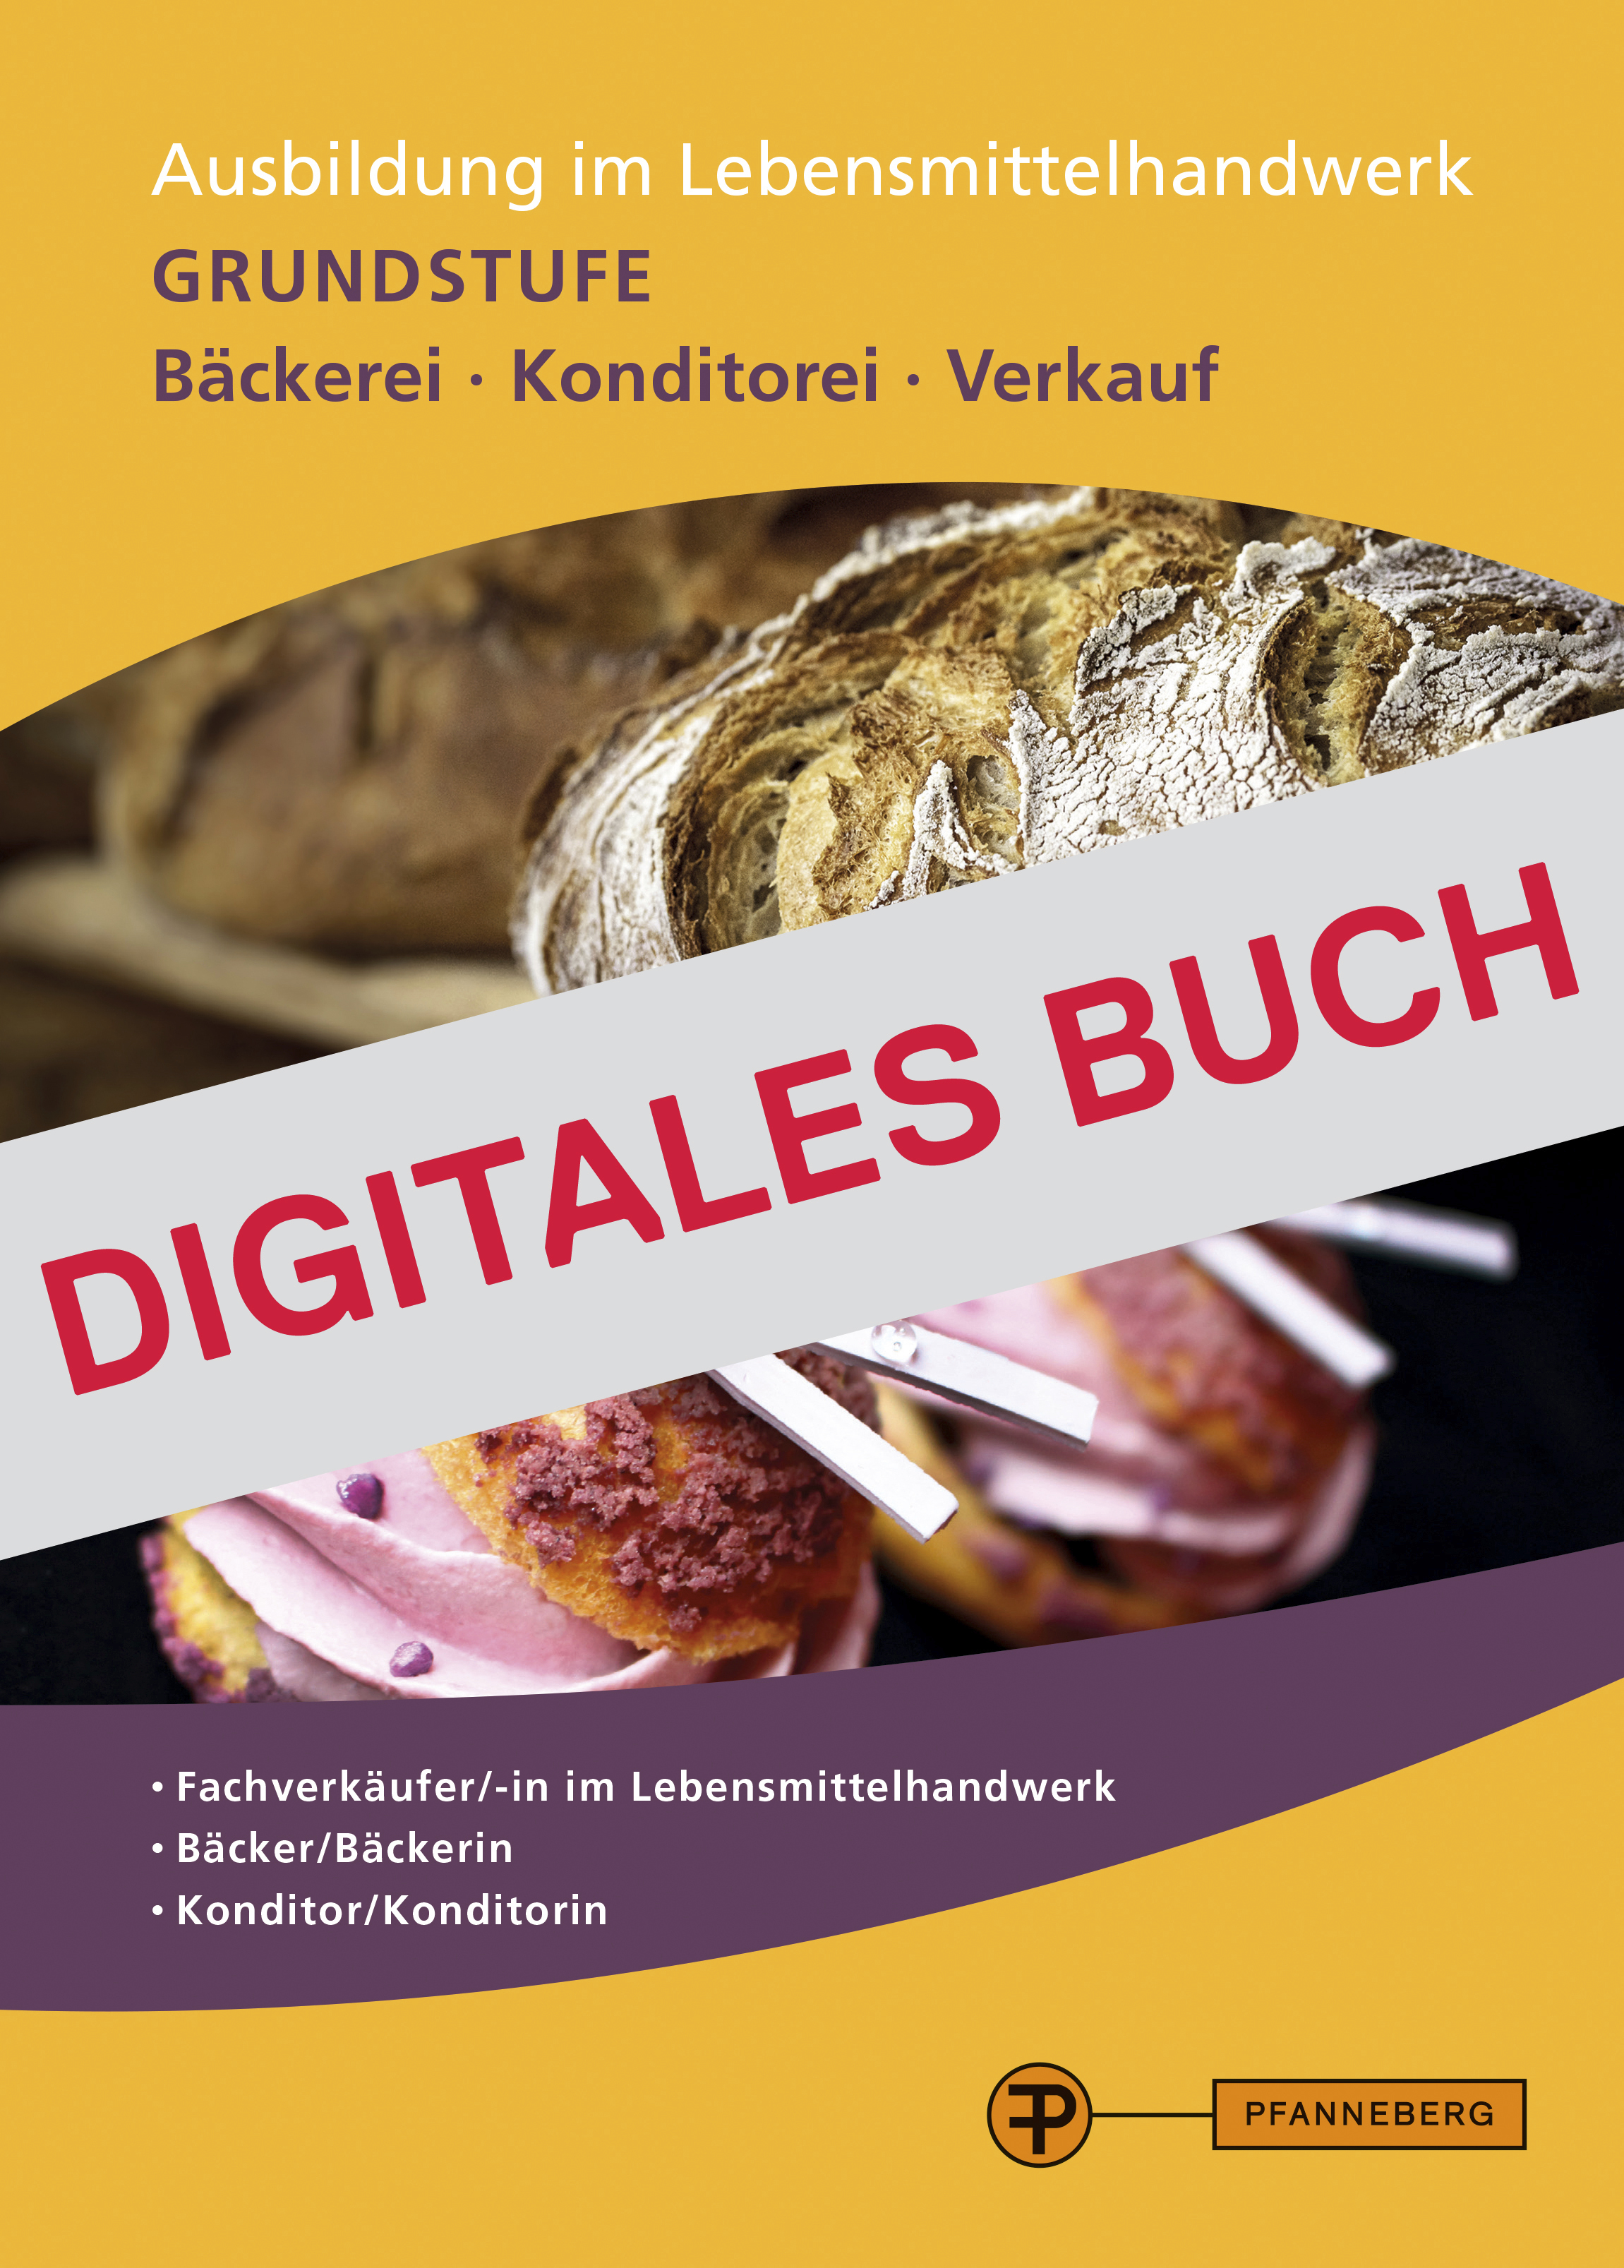 Ausbildung im Lebensmittelhandwerk - Grundstufe - Digitales Buch